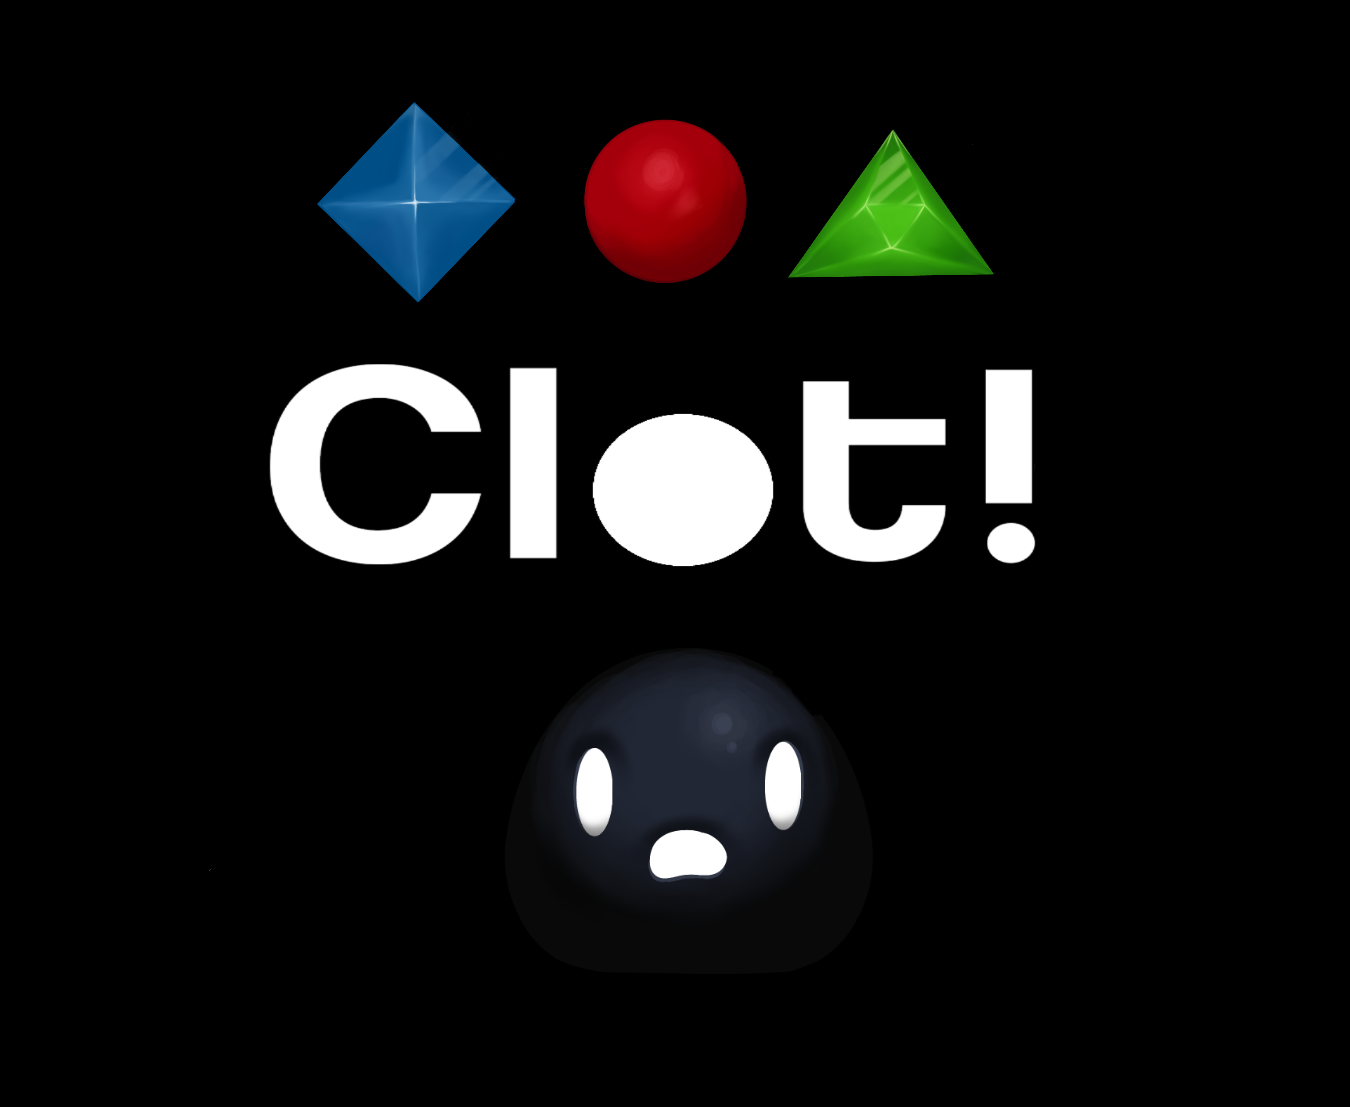 Clot!